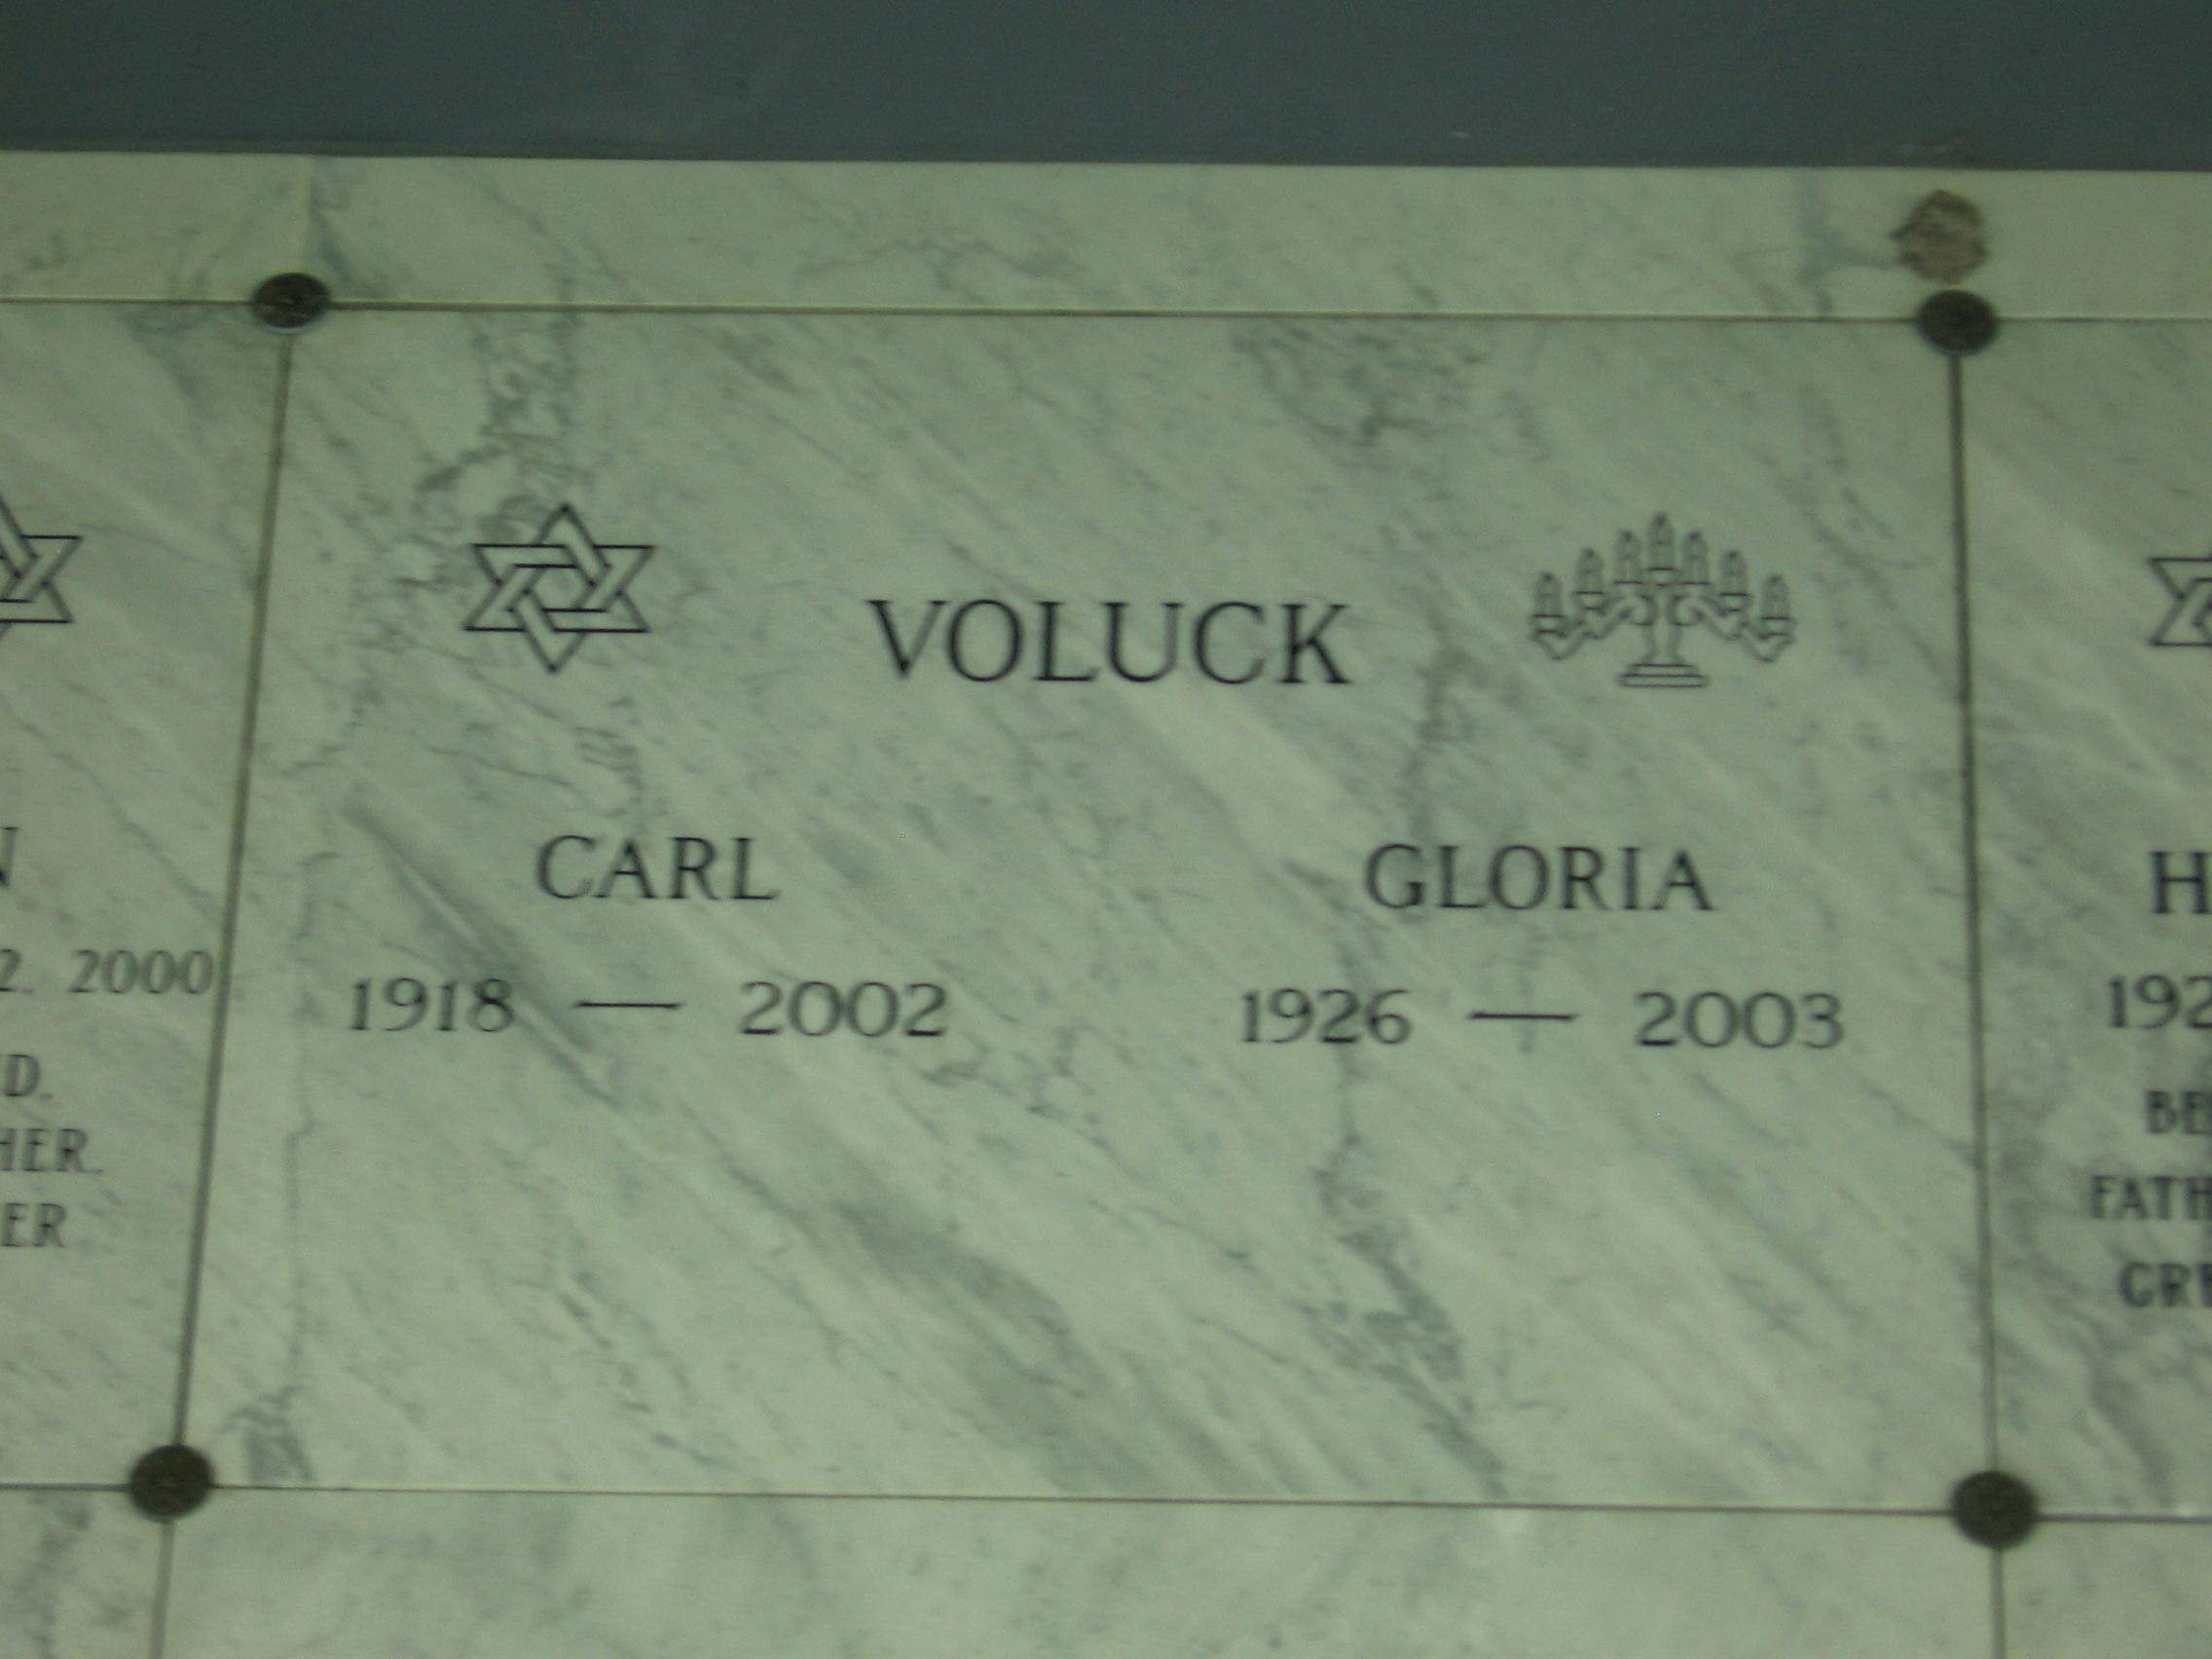 Carl Voluck